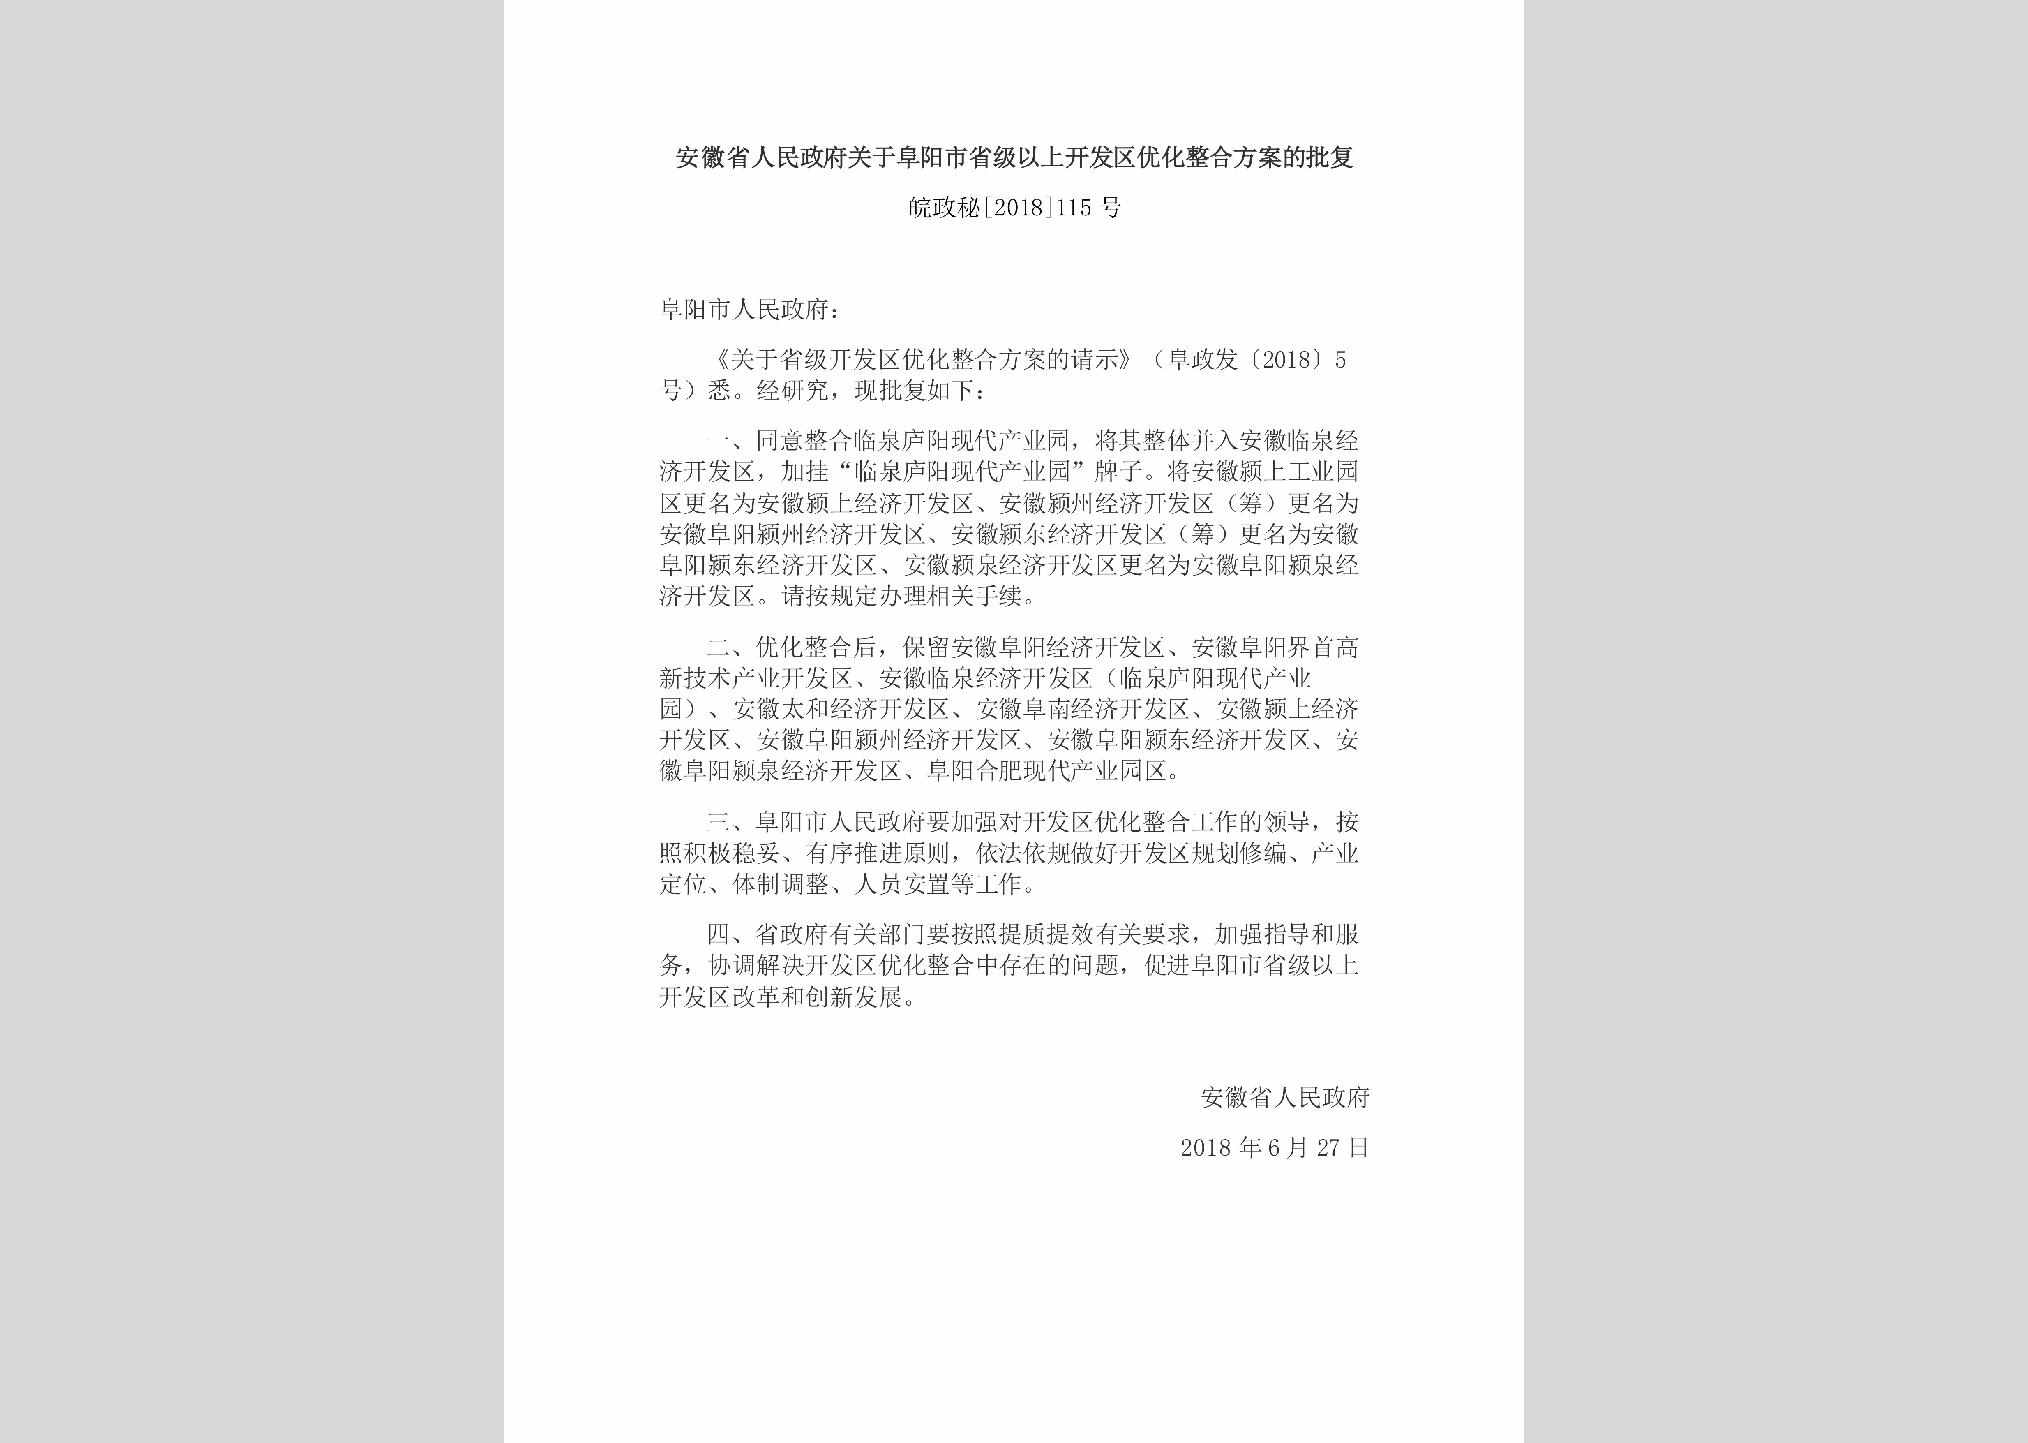 皖政秘[2018]115号：安徽省人民政府关于阜阳市省级以上开发区优化整合方案的批复